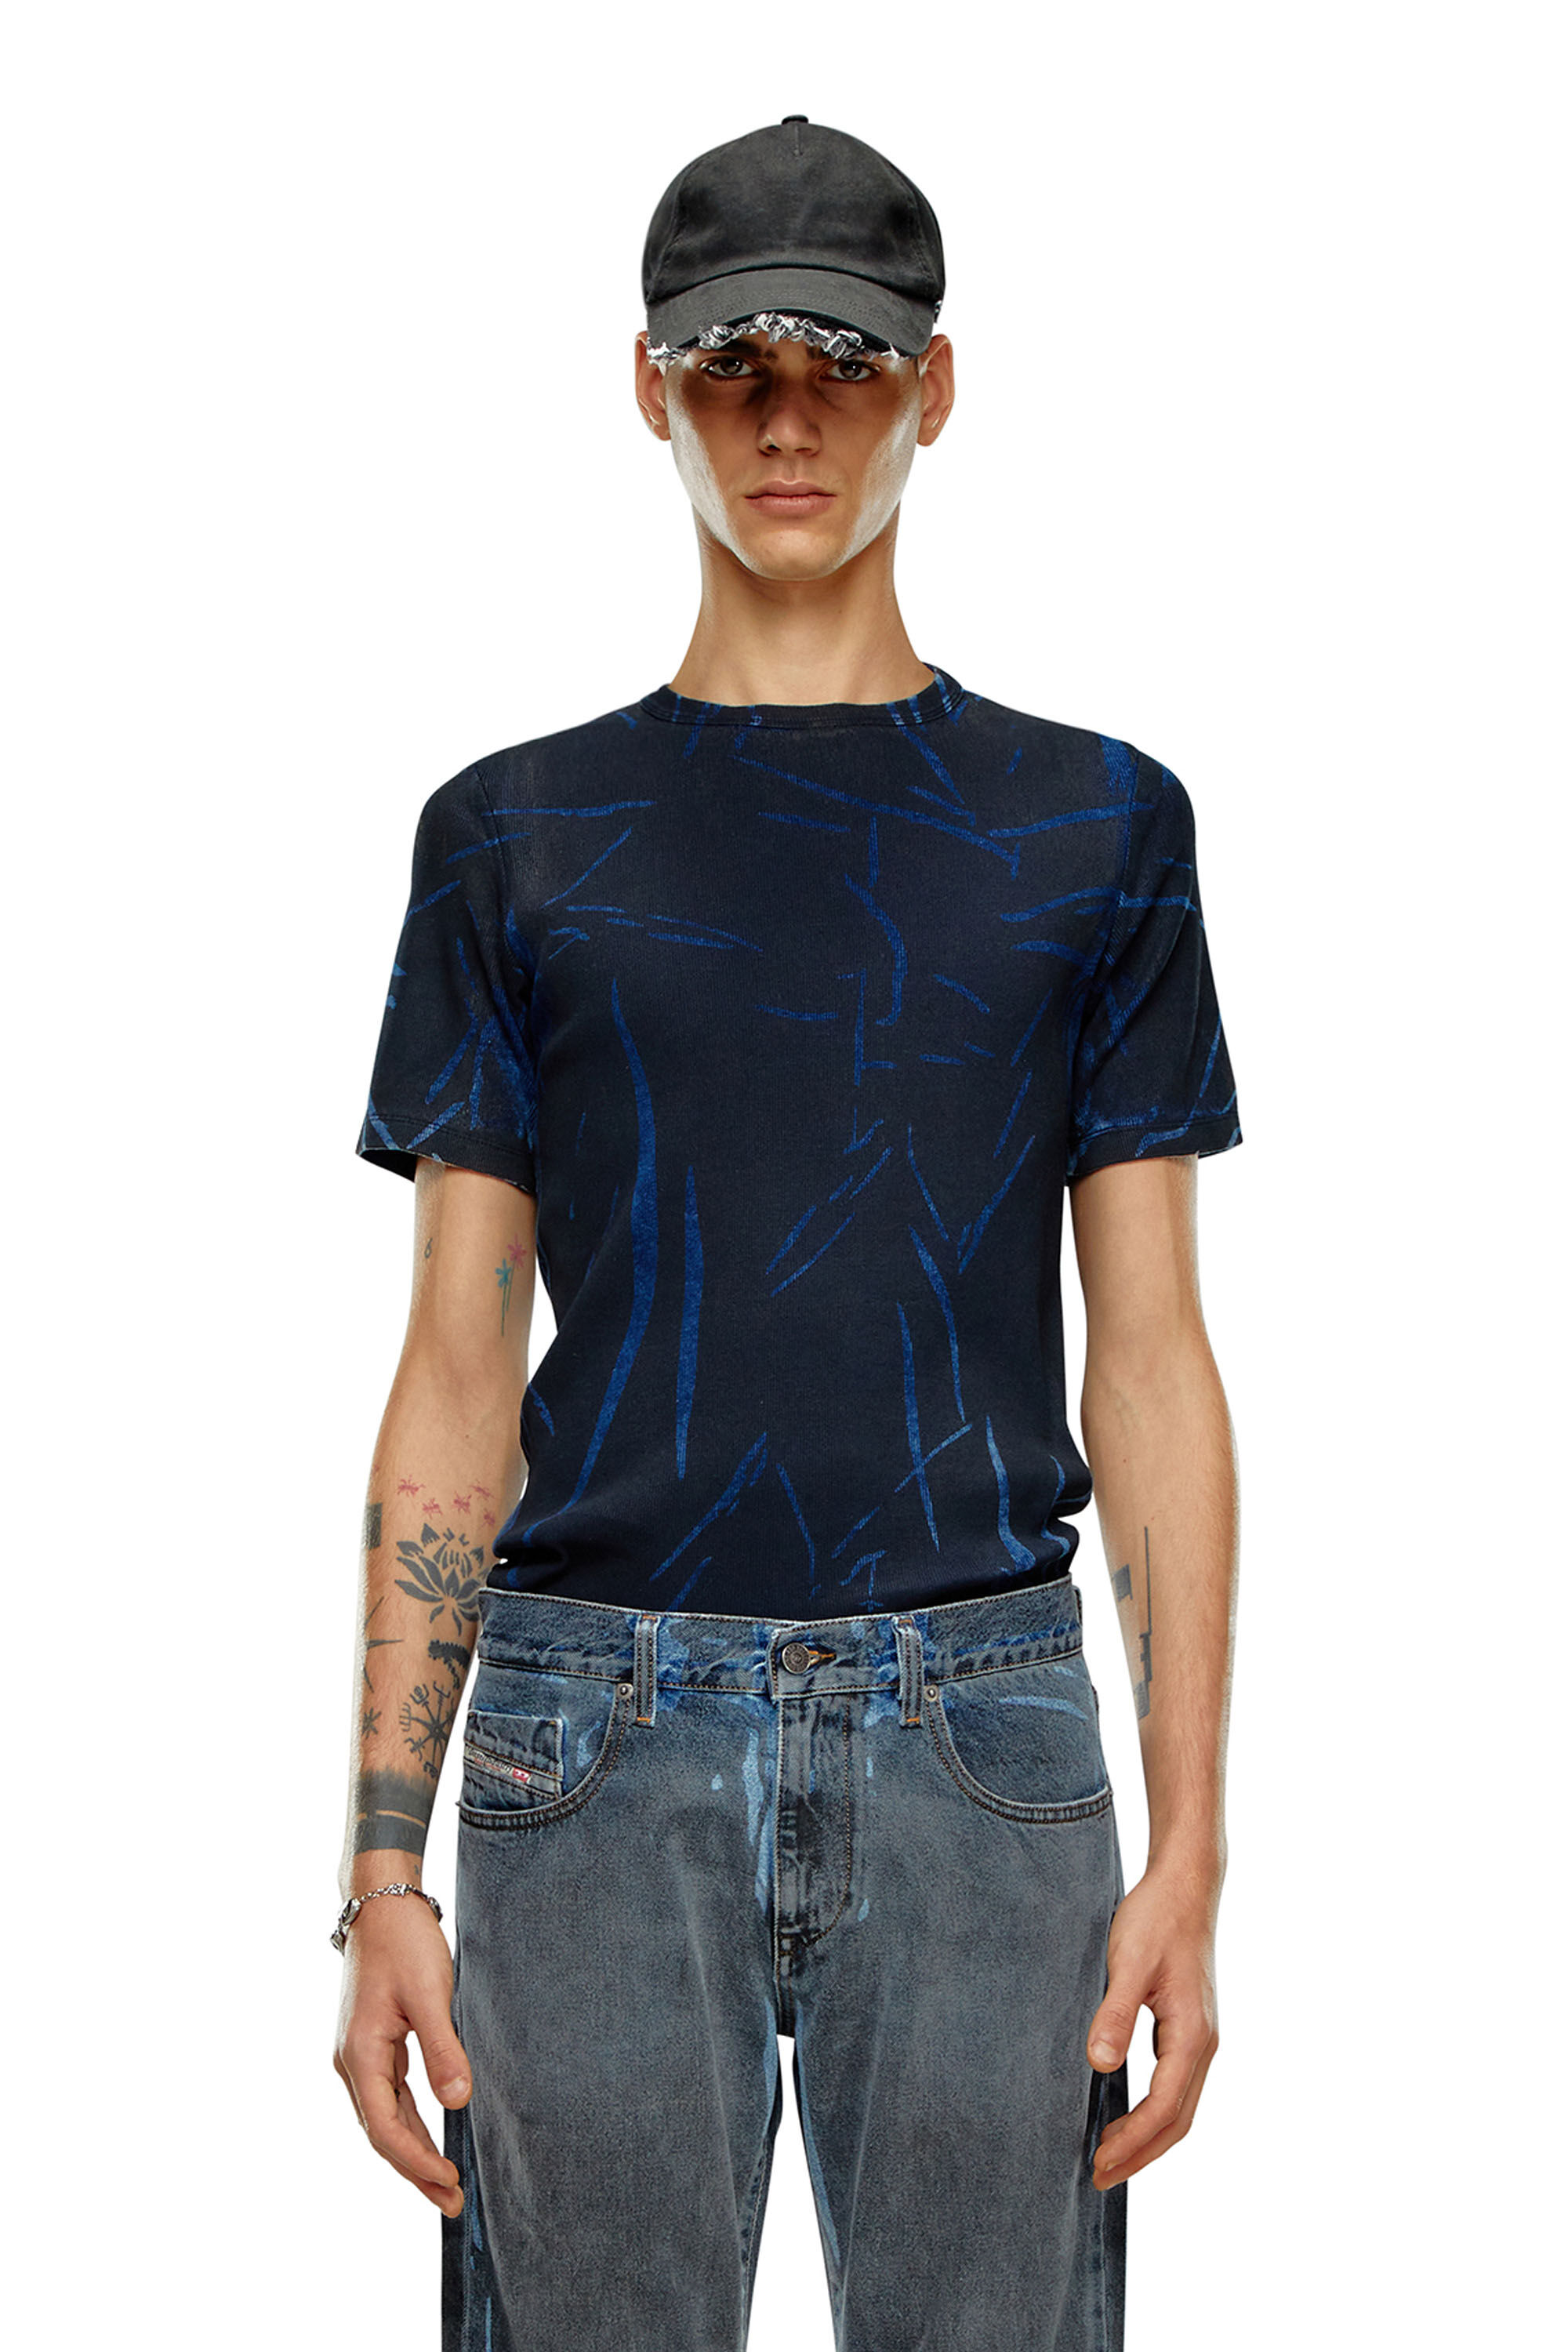 Diesel - DTO-D-RIBBER, Homme T-shirt avec imprimé effet froissé in Bleu - Image 3